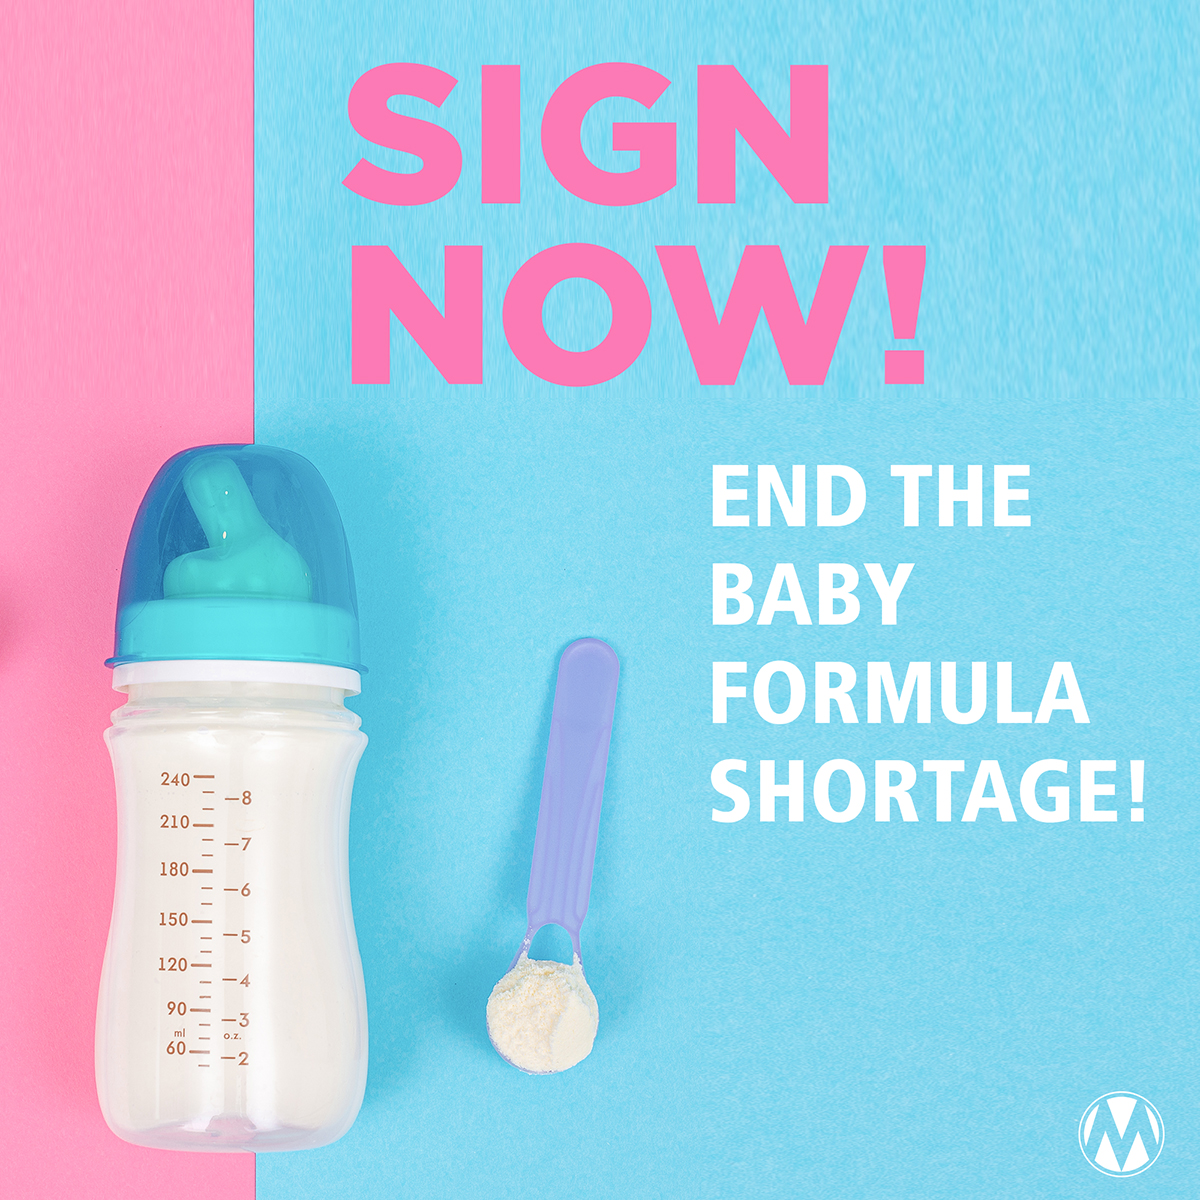 Baby formula shortage emergency! MomsRising